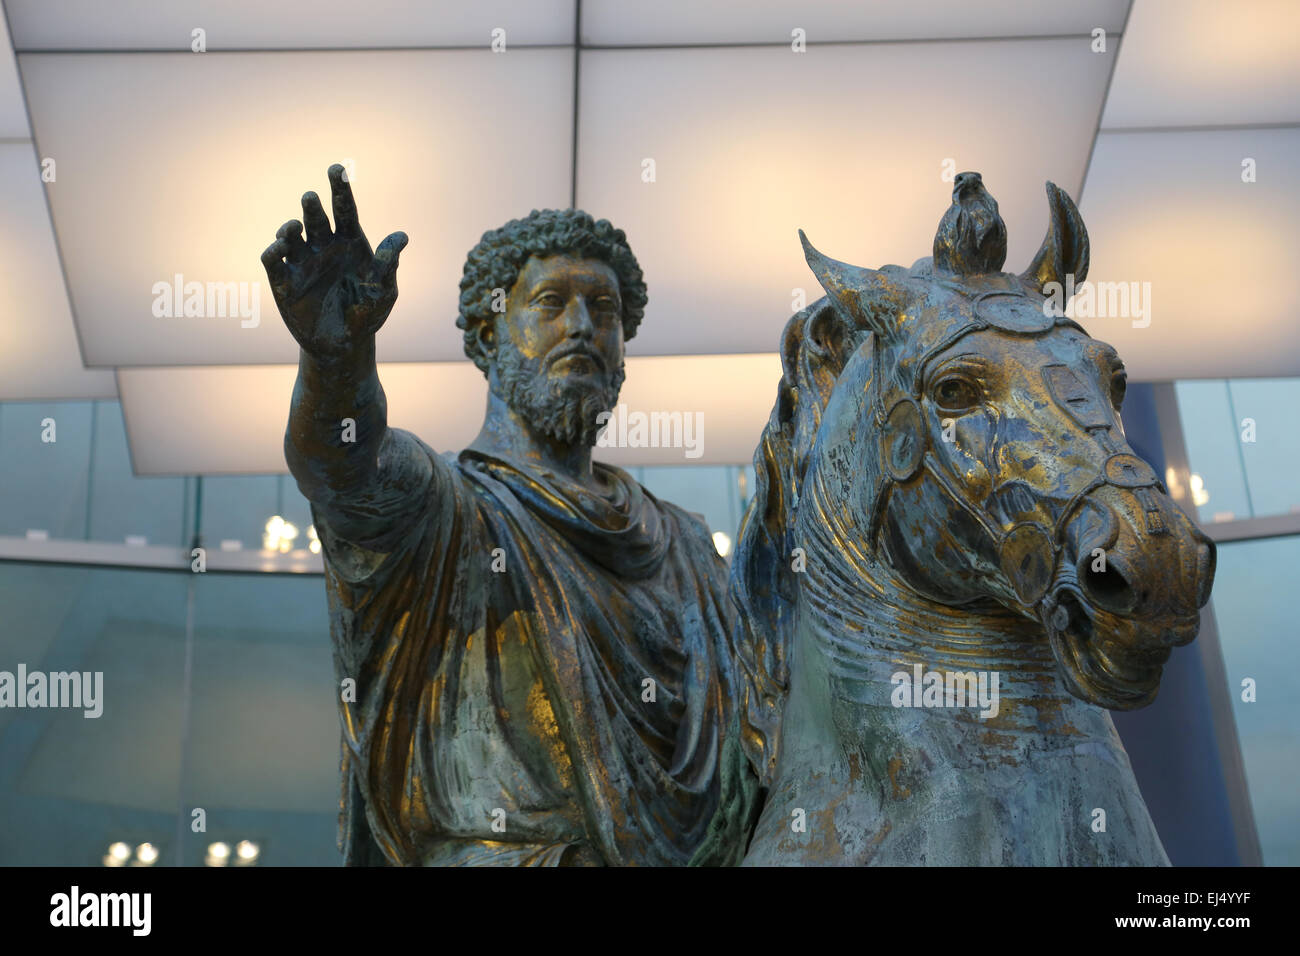 Equestrian statue of Marcus Aurelius (121-10 AD). Roman emperor. 2nd C. AD. Capitoline Museums. Rome. Italy. Stock Photo